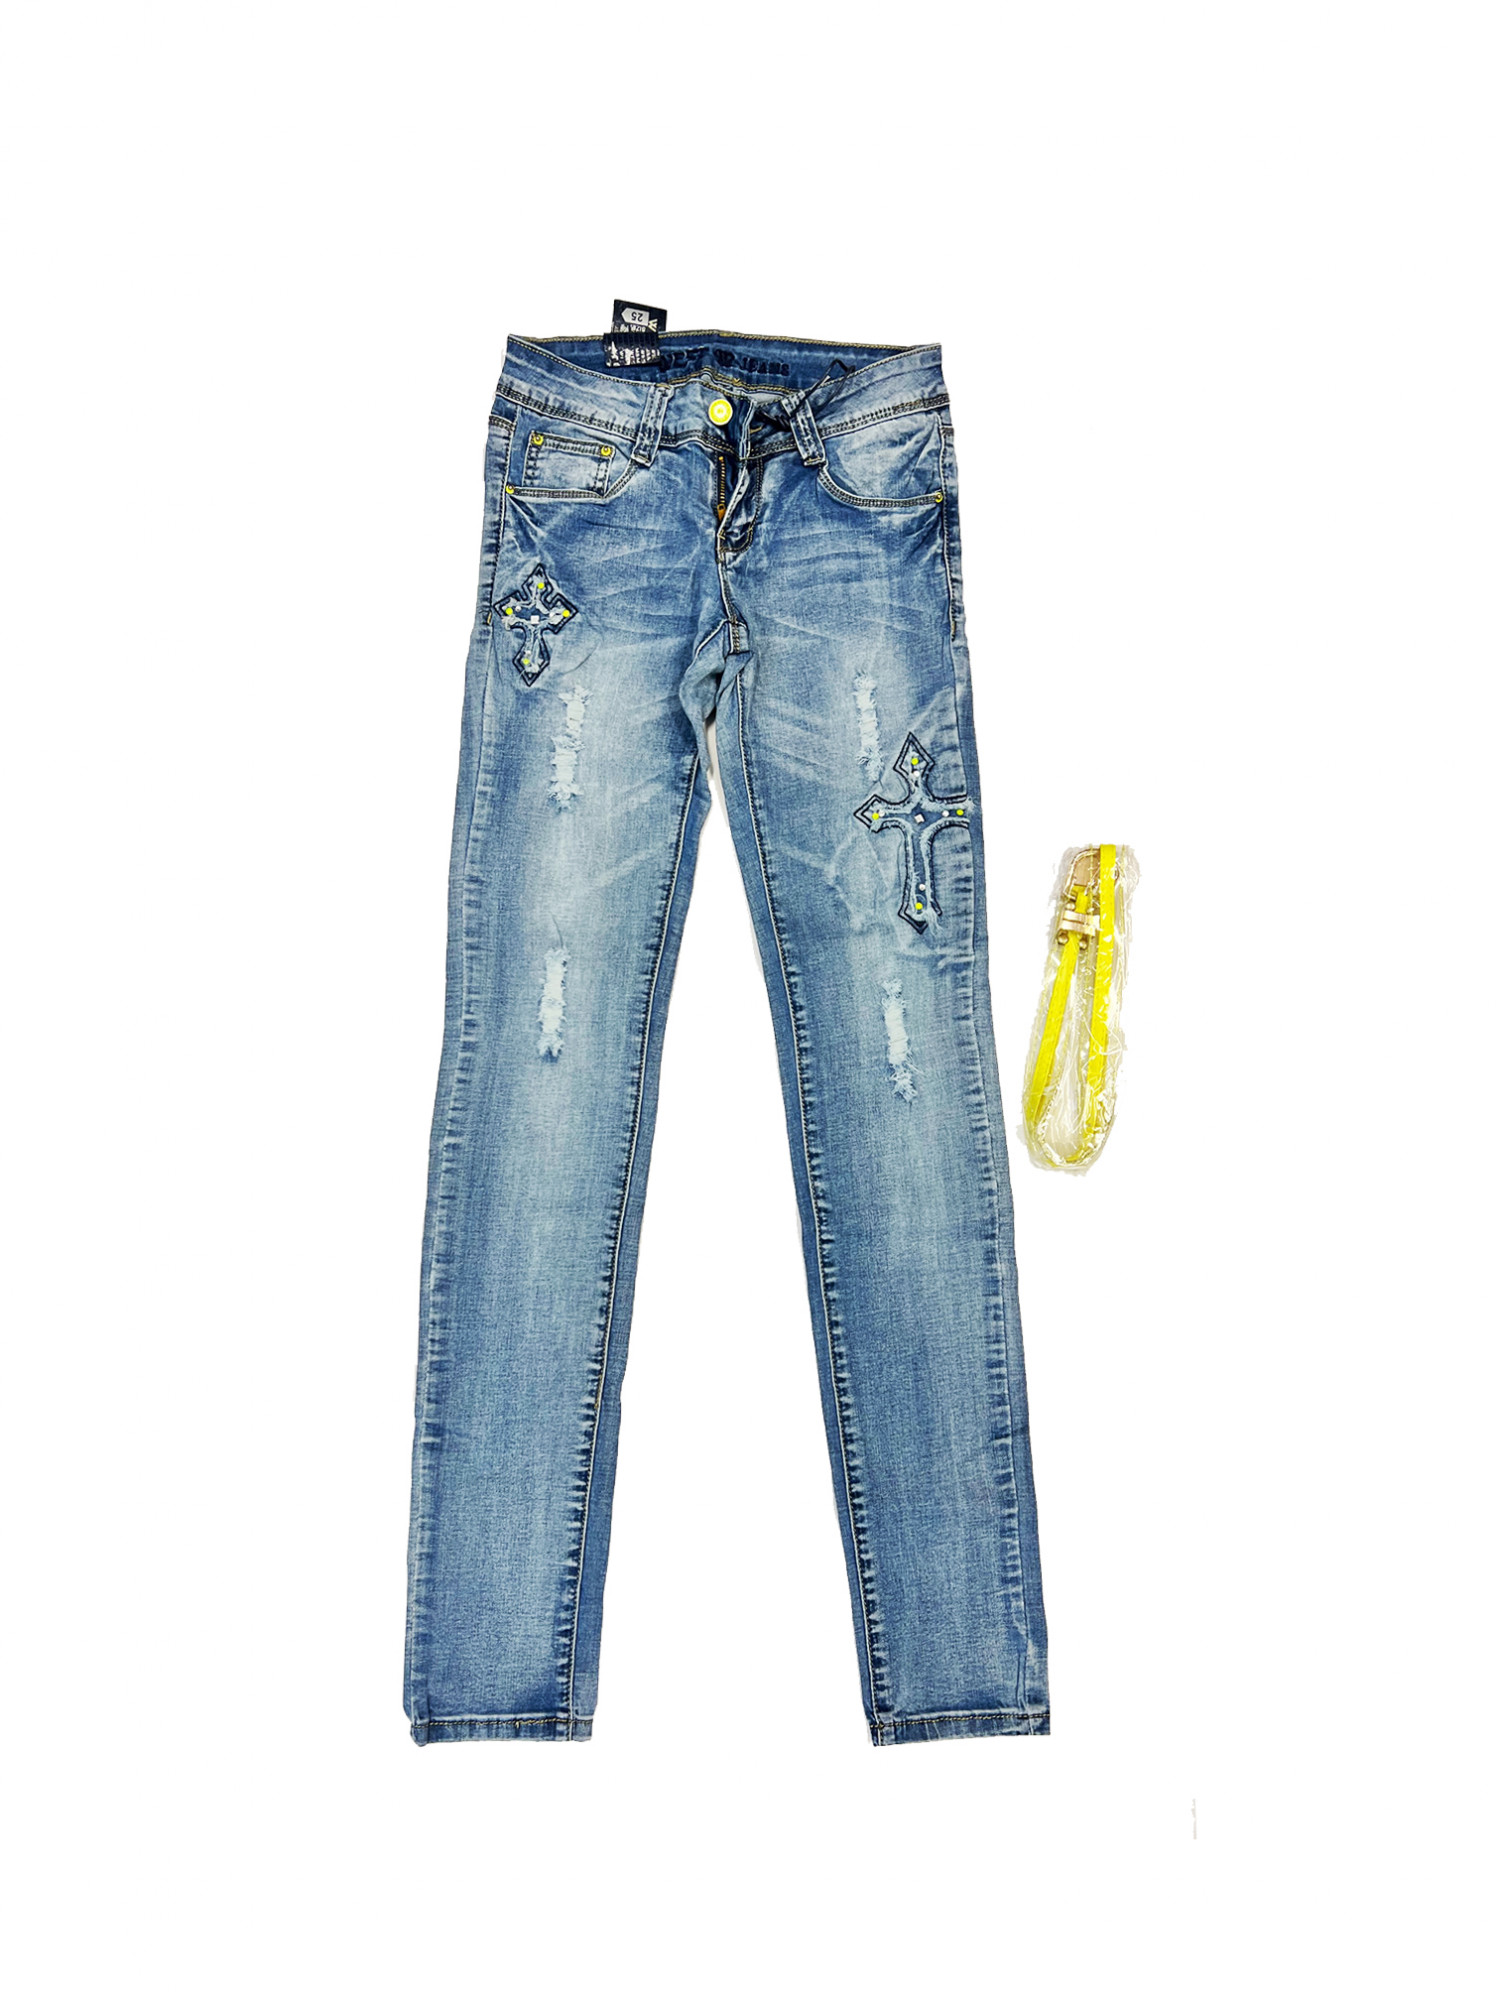 Dámské džínové kalhoty s nášivkami 8082.81 - FPrice modrá 25